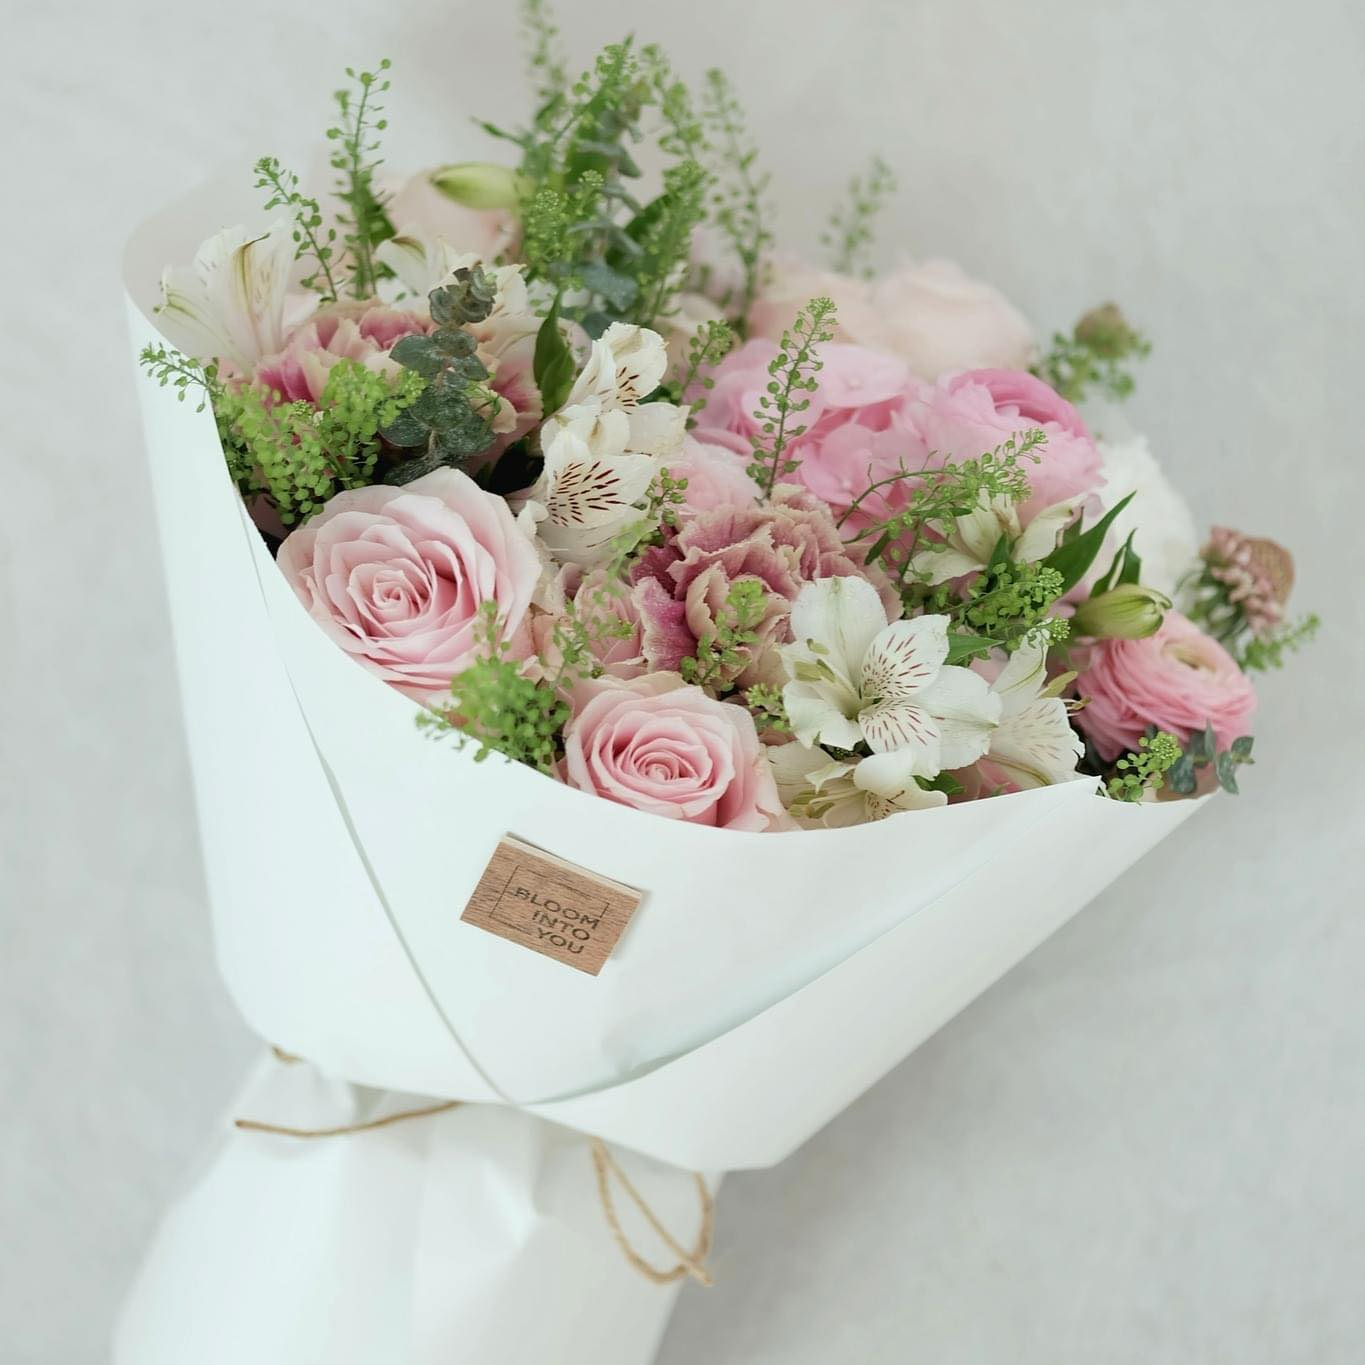 Bó hoa gồm tú cầu hồng, hoa hồng, mao lương, thuỷ tiên, phăng, mix hoa lá phụ khác. Ảnh: Bloom Into You - Flowers & Studio.